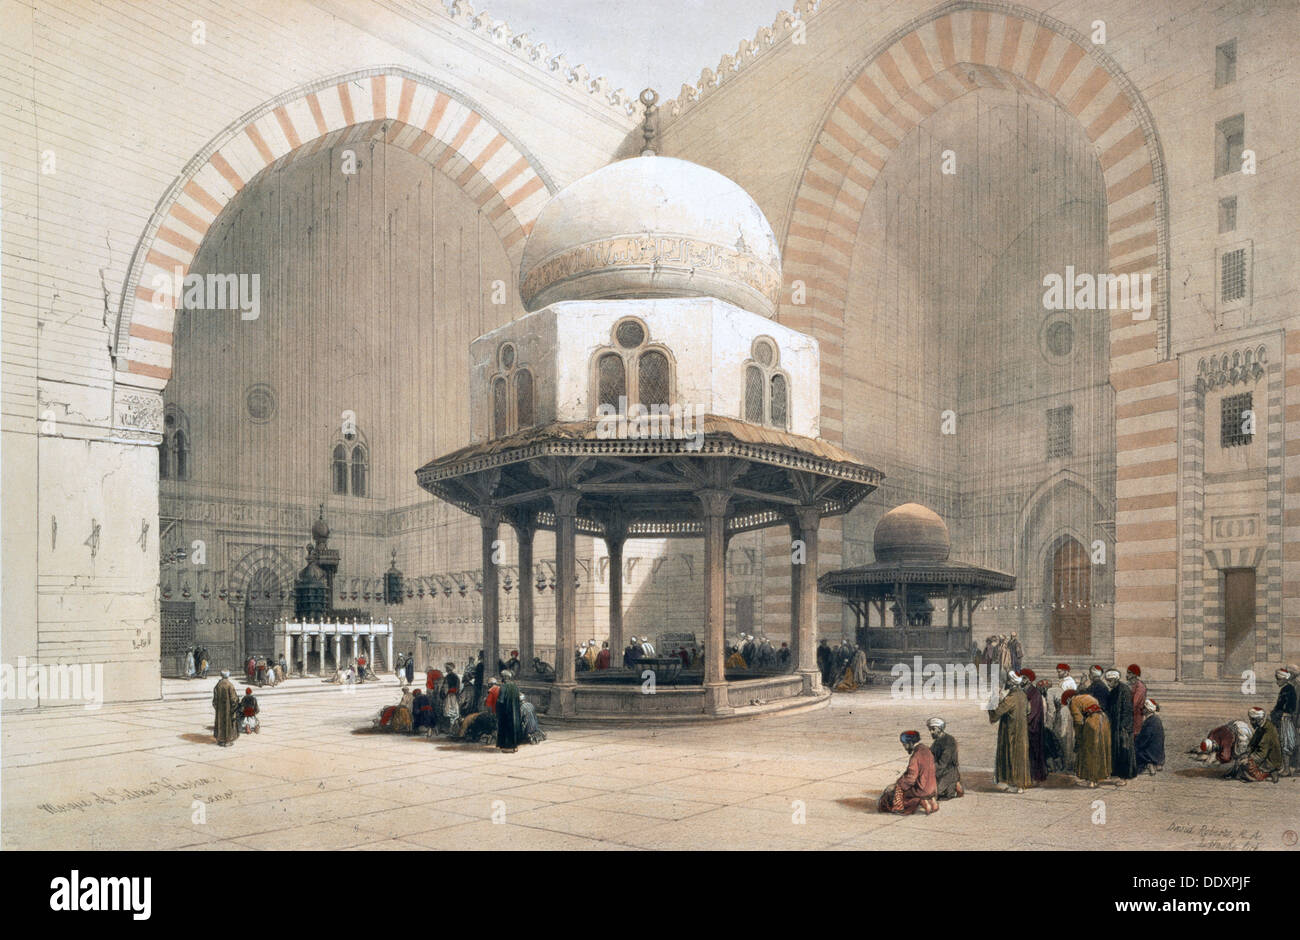 Interno della moschea del sultano al-Ghuri, Cairo, Egitto, xix secolo. Artista: David Roberts Foto Stock